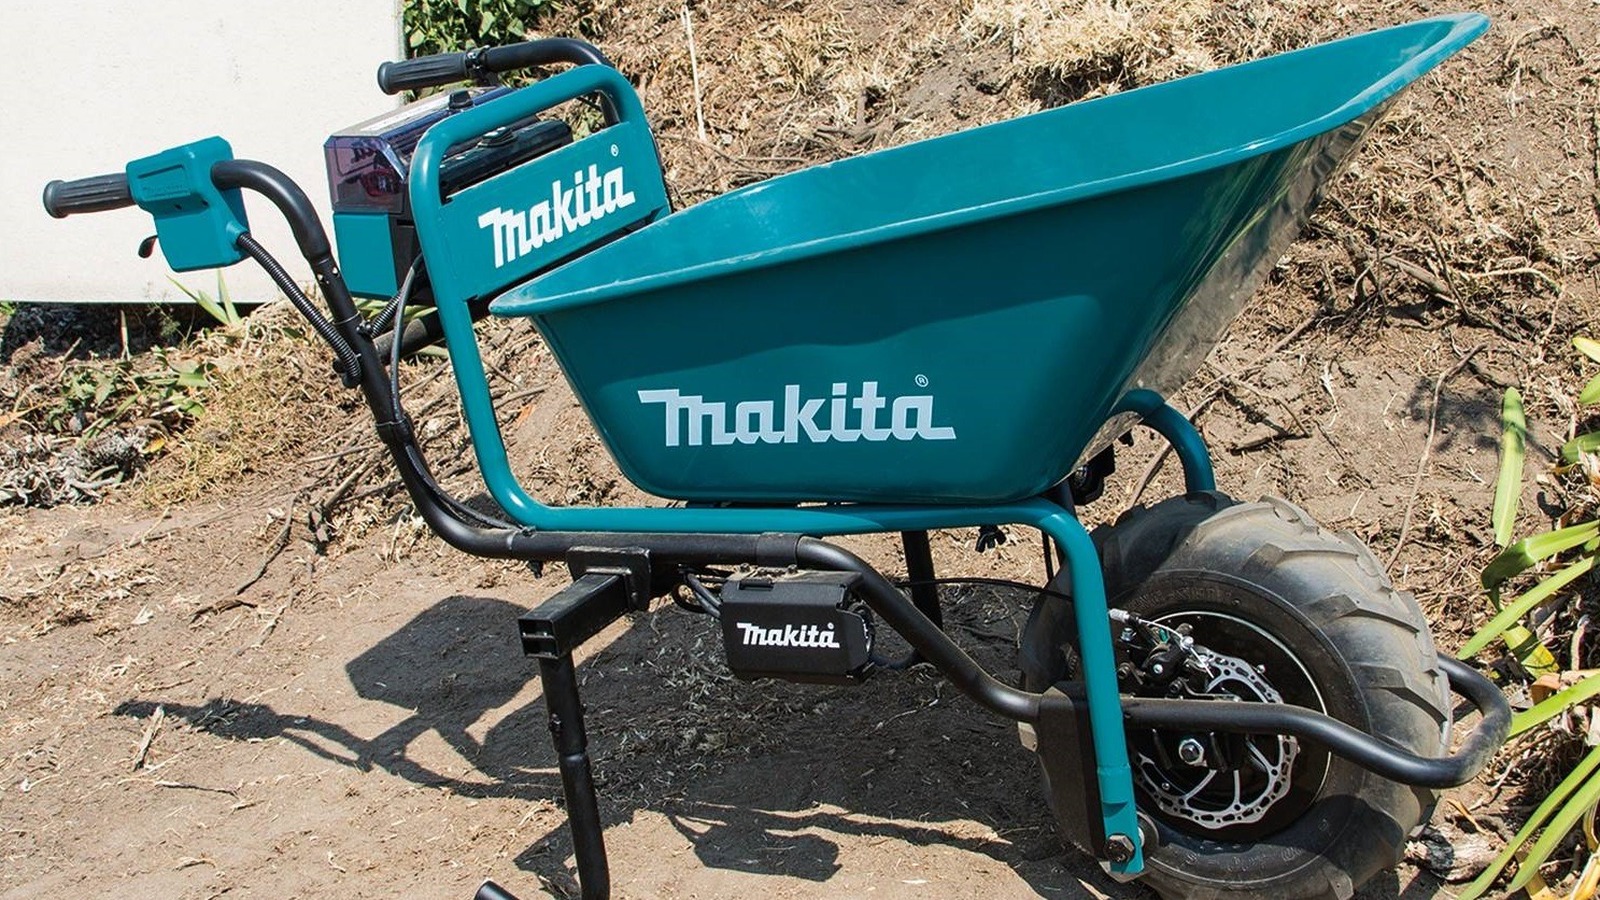 Lo que necesita saber sobre la carretilla a batería de Makita antes de comprarla